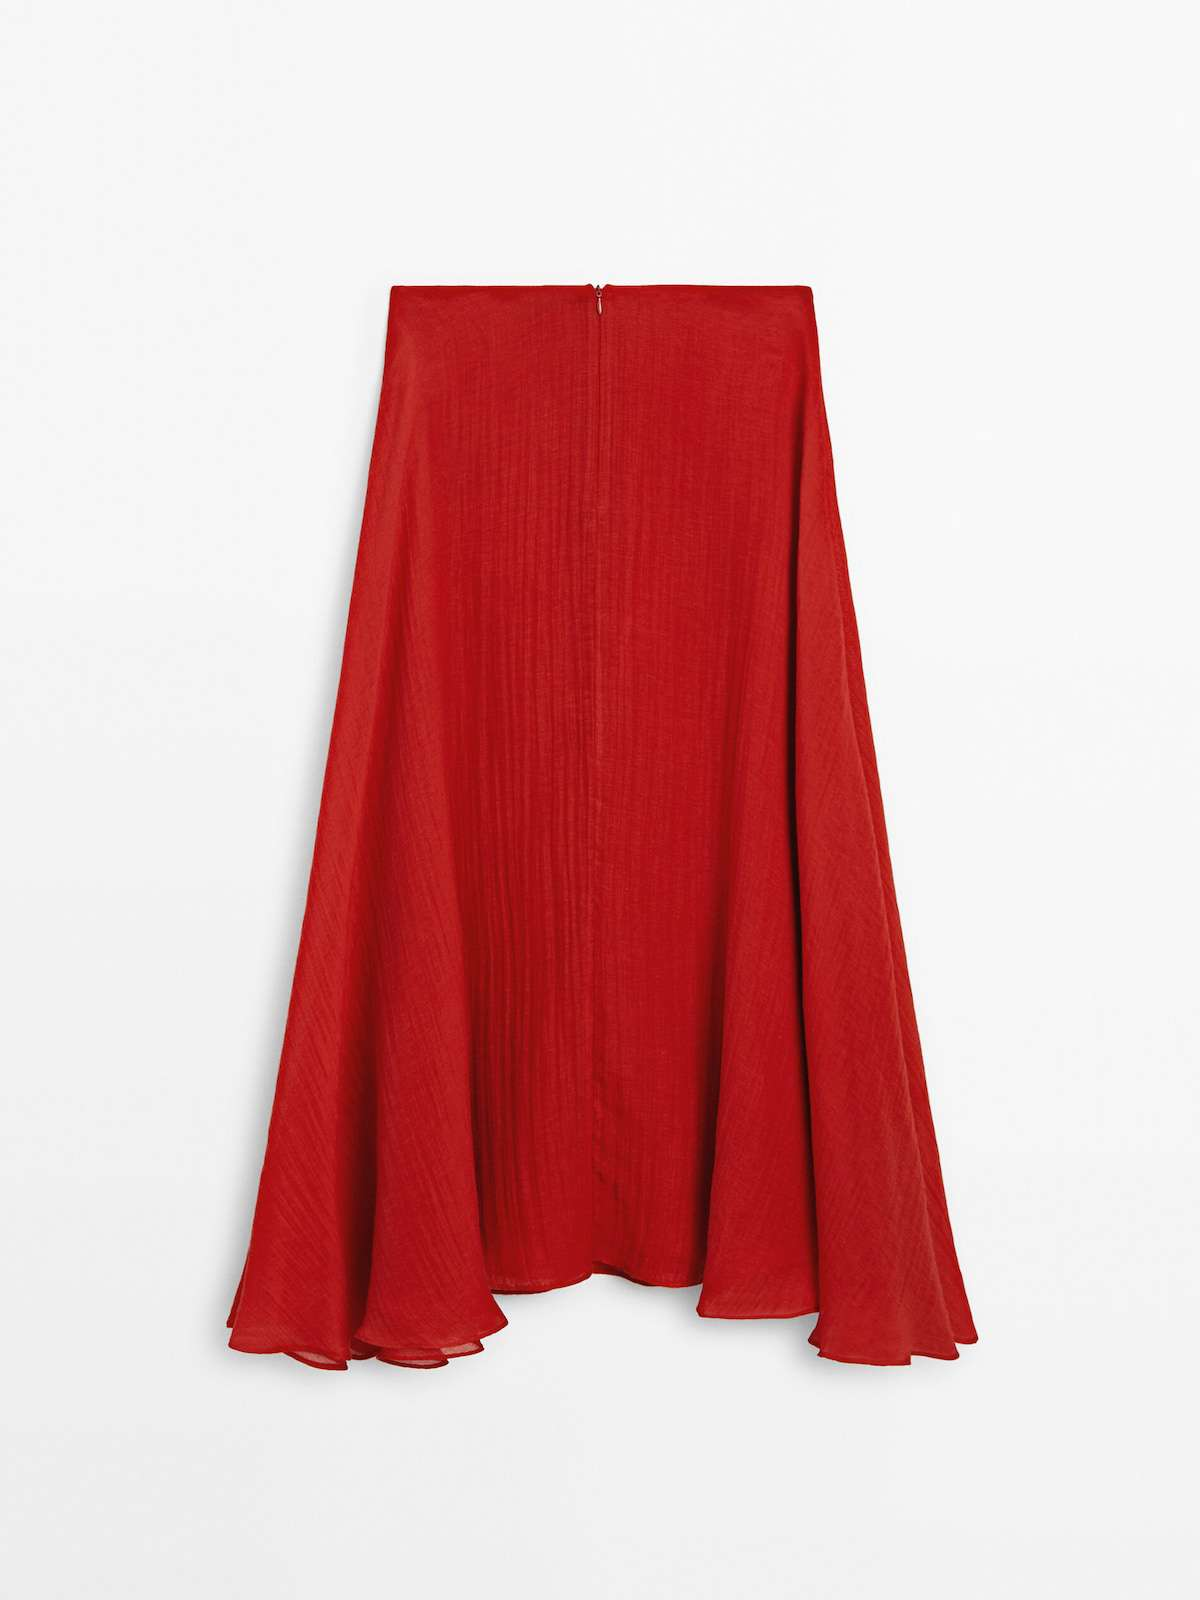 Falda roja con vuelo